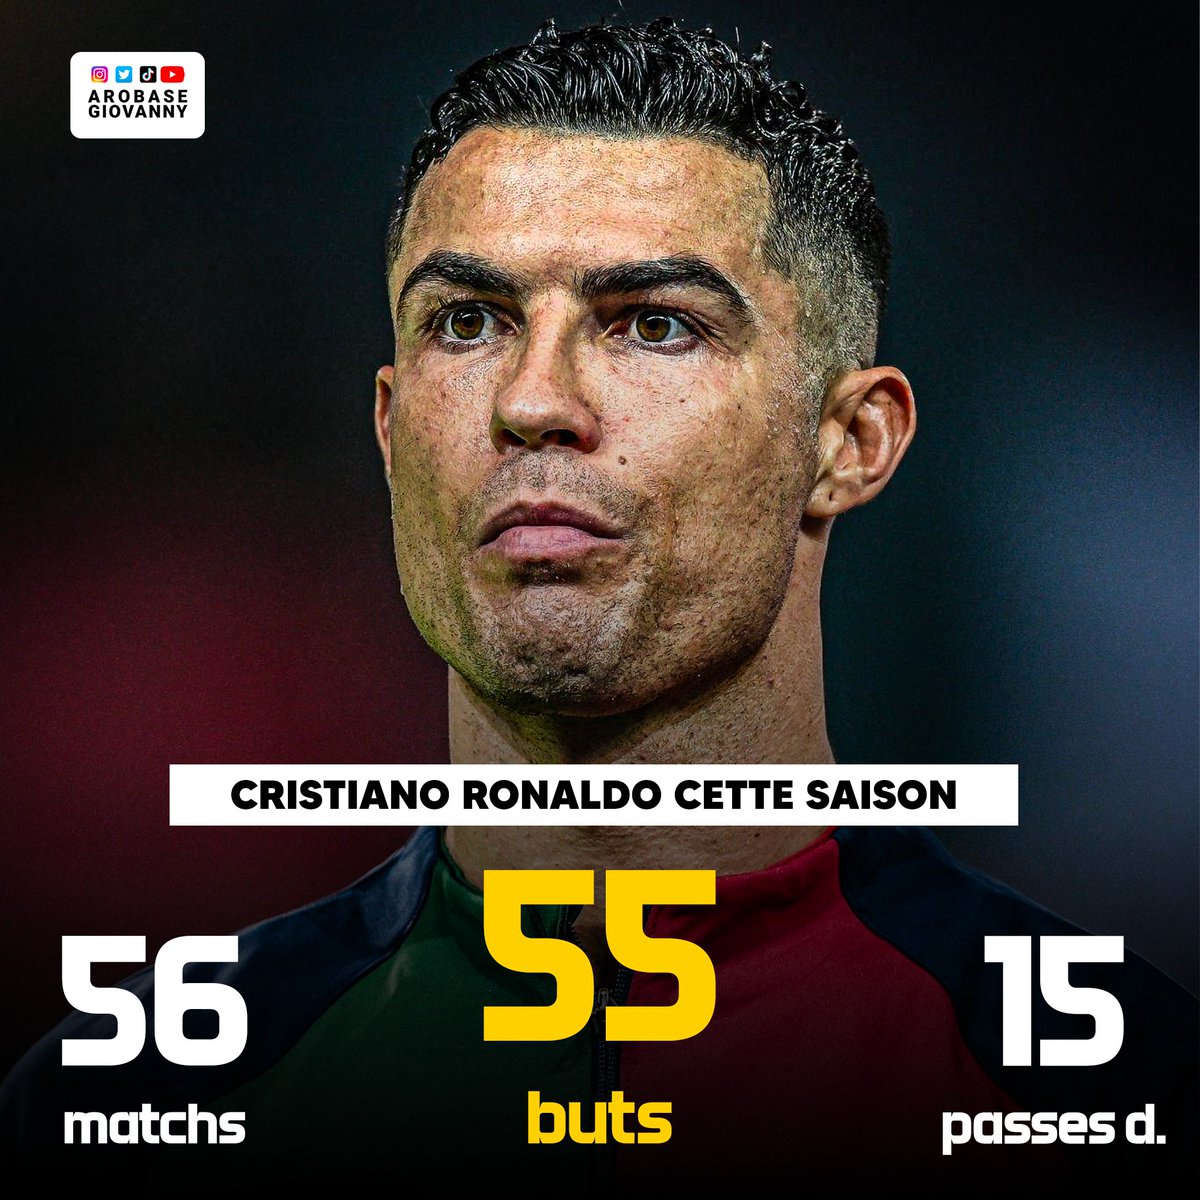 🔴 La saison à 70 G/A de Cristiano Ronaldo. 👕 56 matchs ⚽️ 55 buts 🅰️ 15 passes décisives STRA-TO-SPHÉ-RIQUE